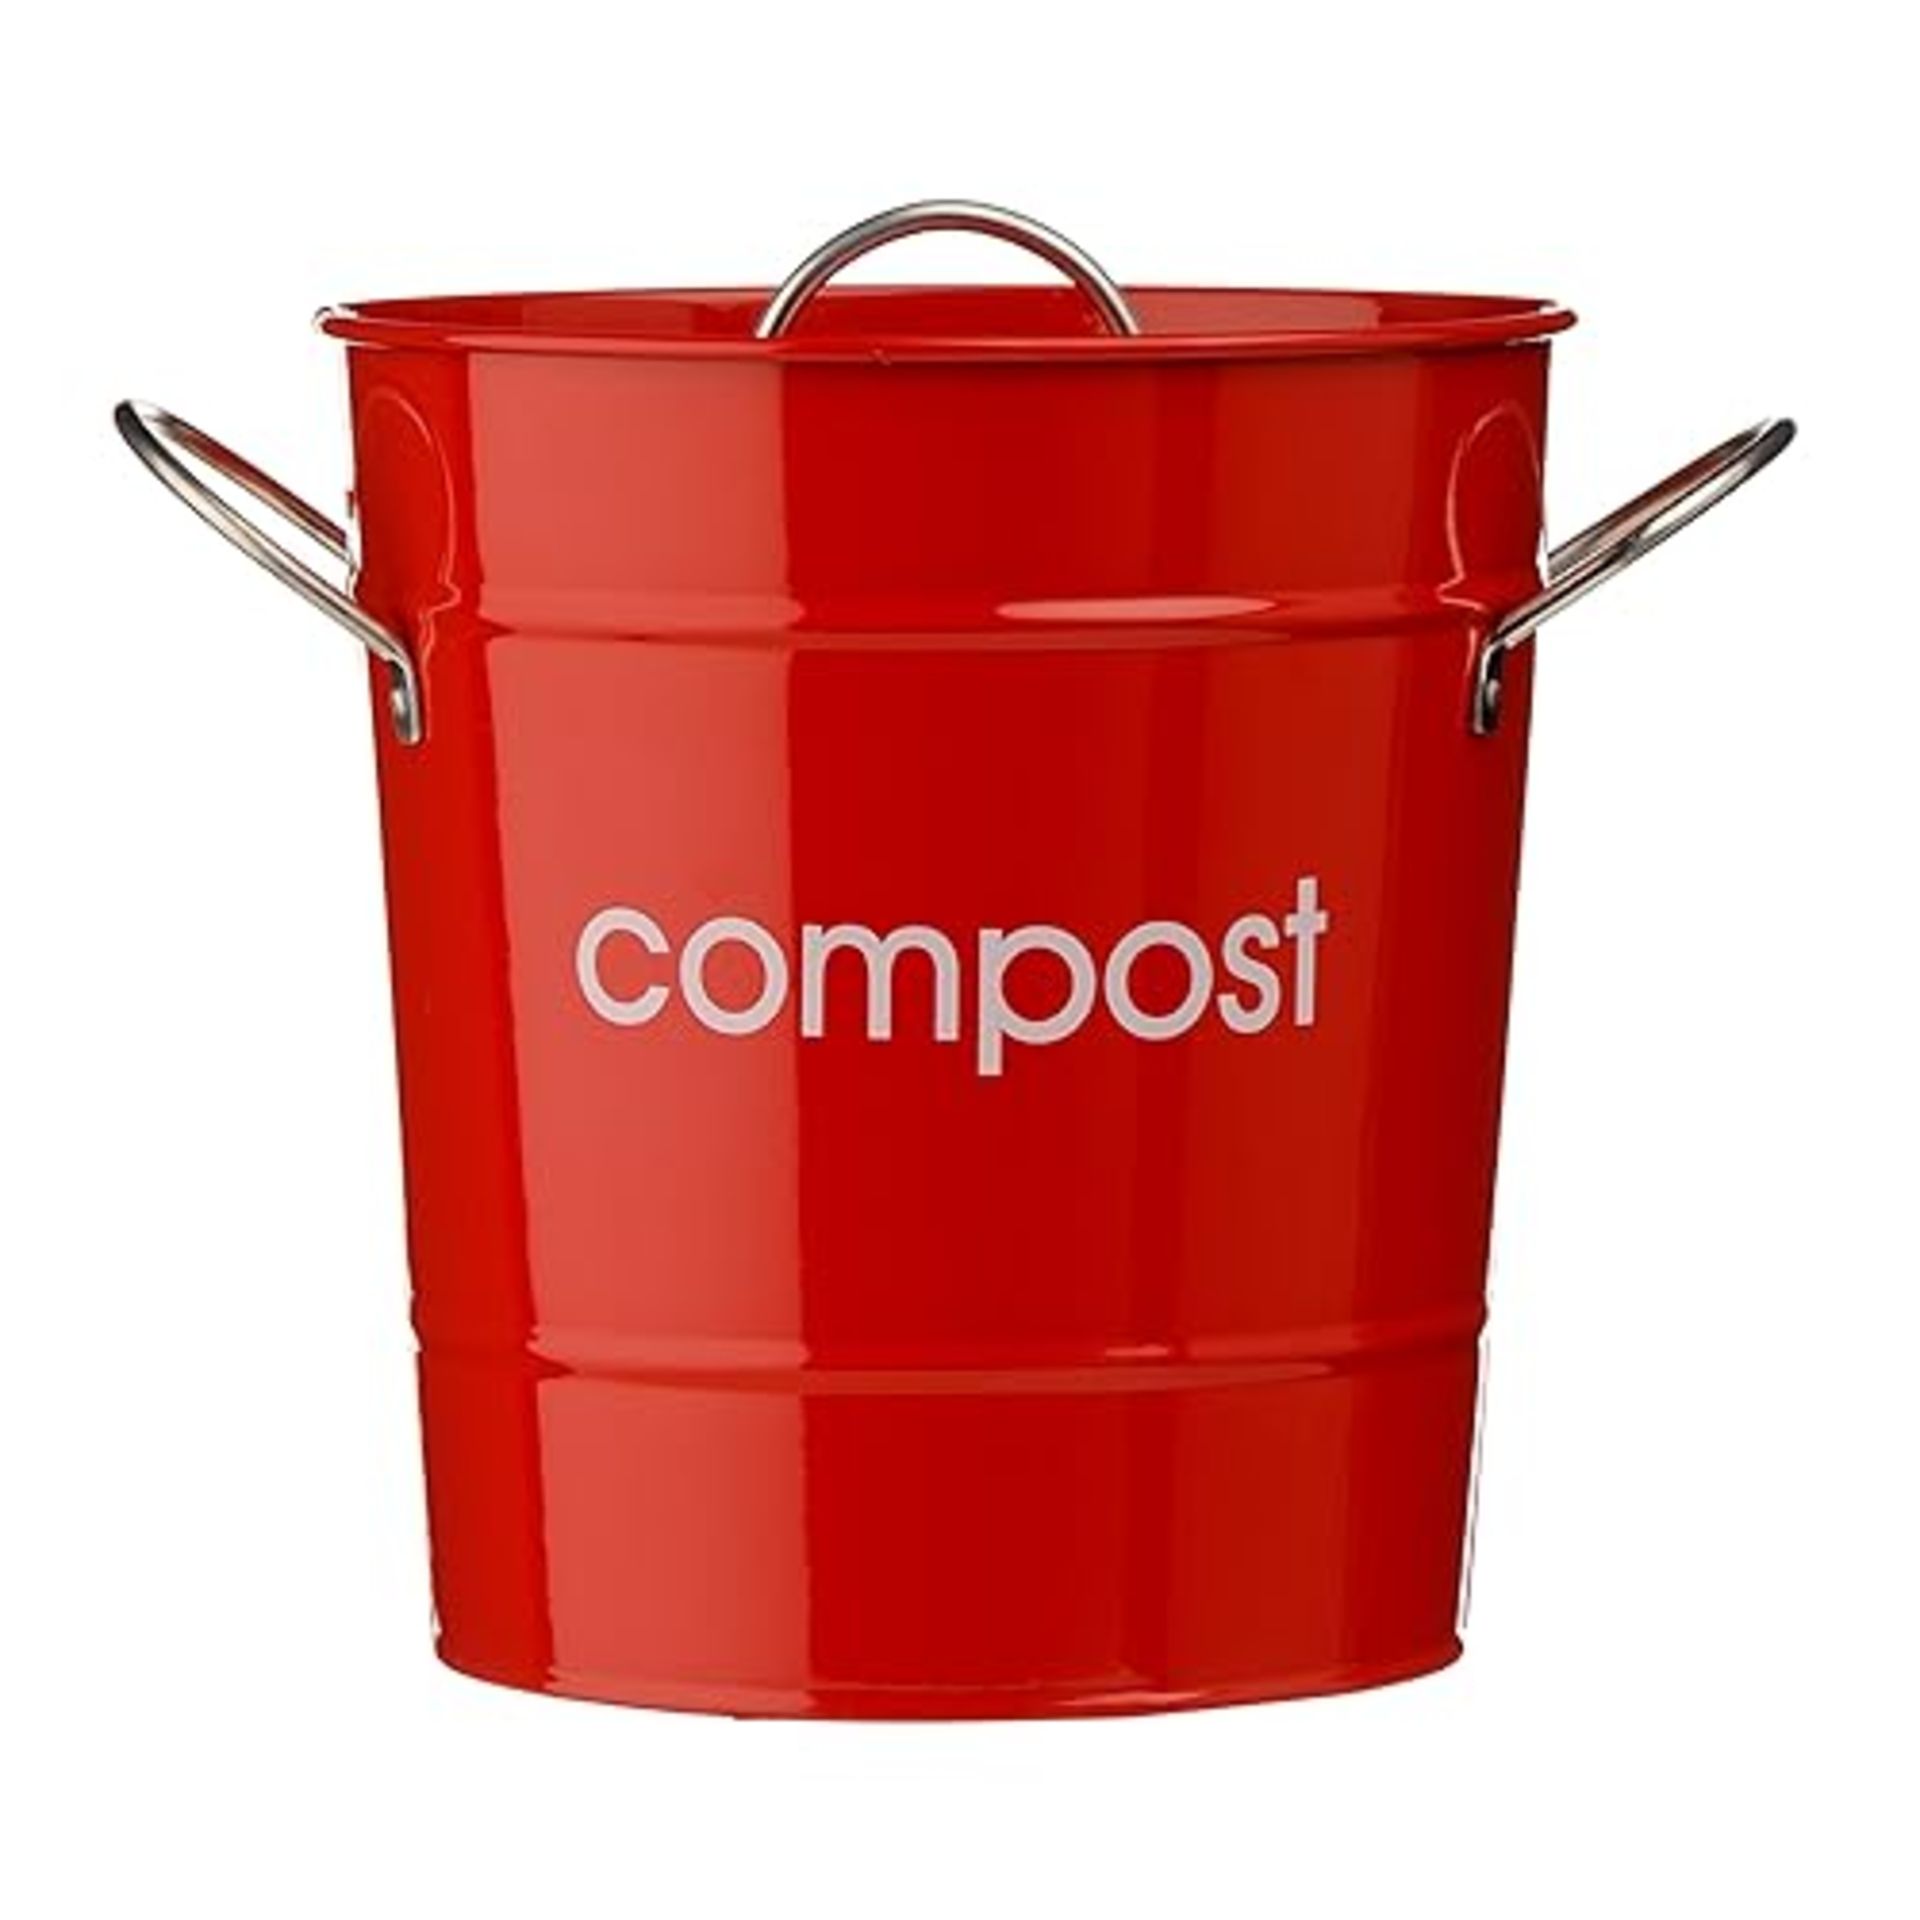 Premier Housewares 510017 Compost Bin Red Compost Bin Kitchen Steel Garden Compost Bin Outdoor Comp